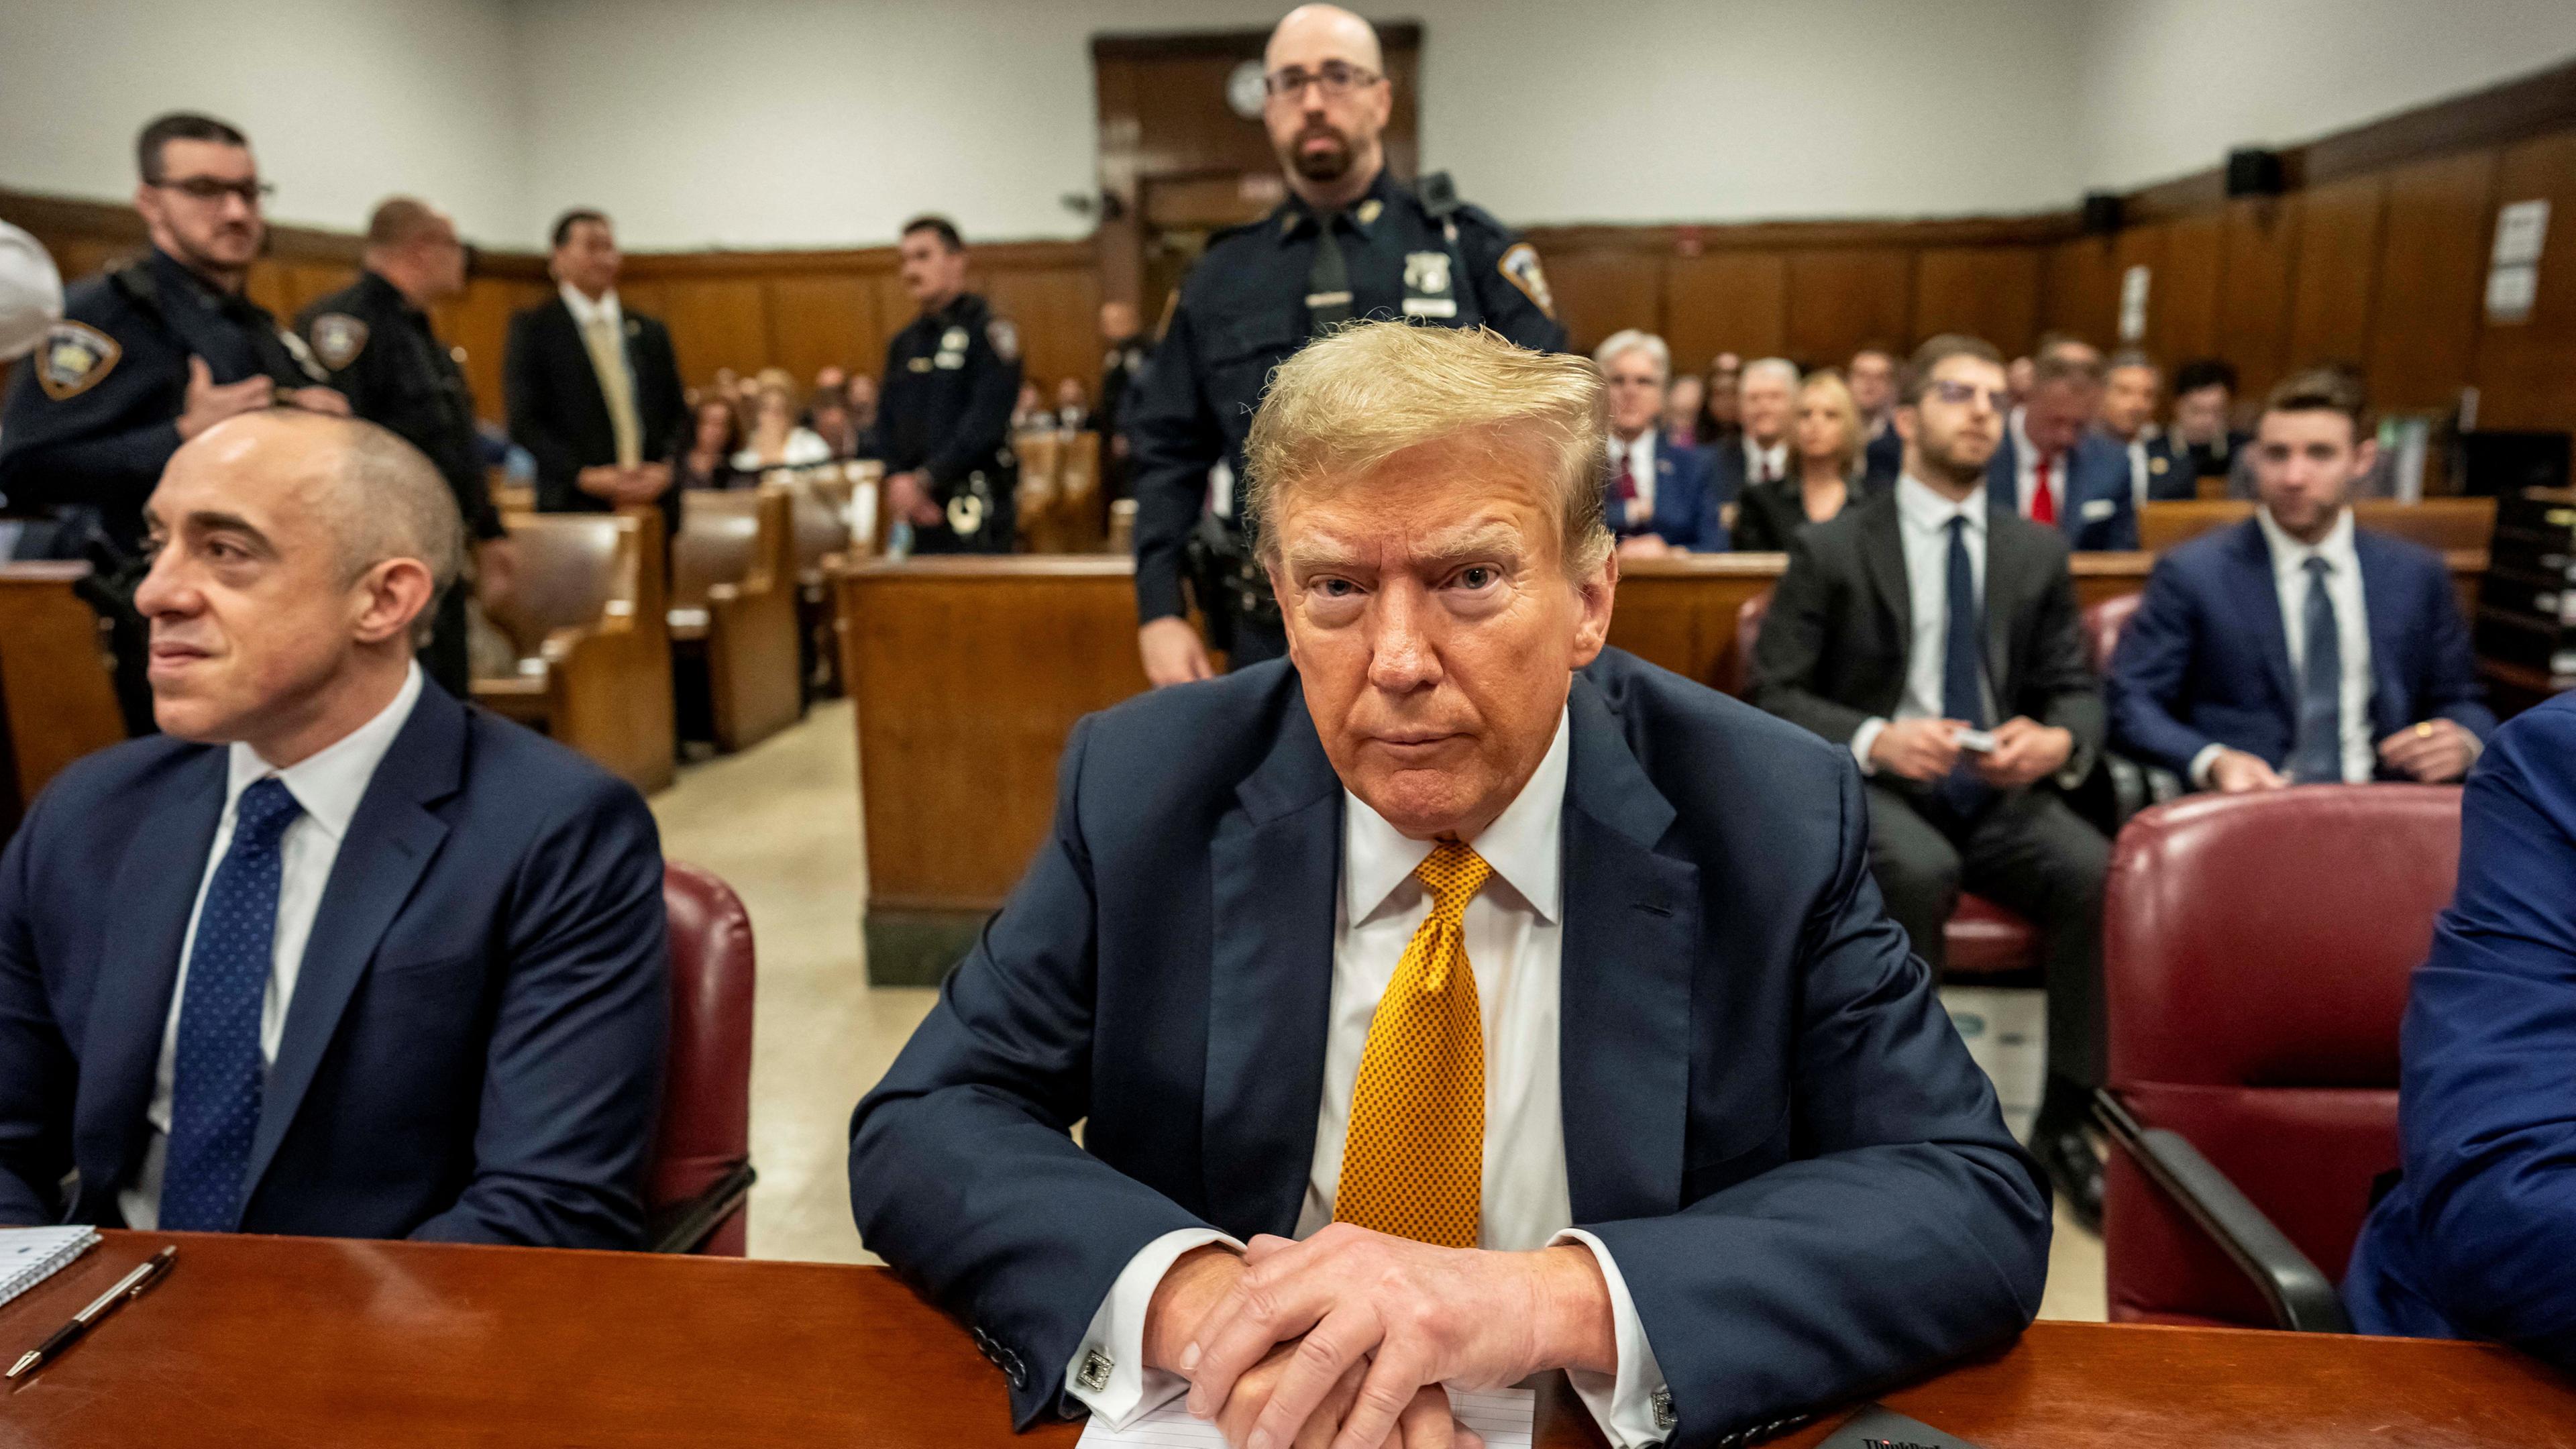 Der ehemalige US-Präsident Donald Trump sitzt in einem blauen Anzug mit goldener Kravatte auf der Anklagebank.